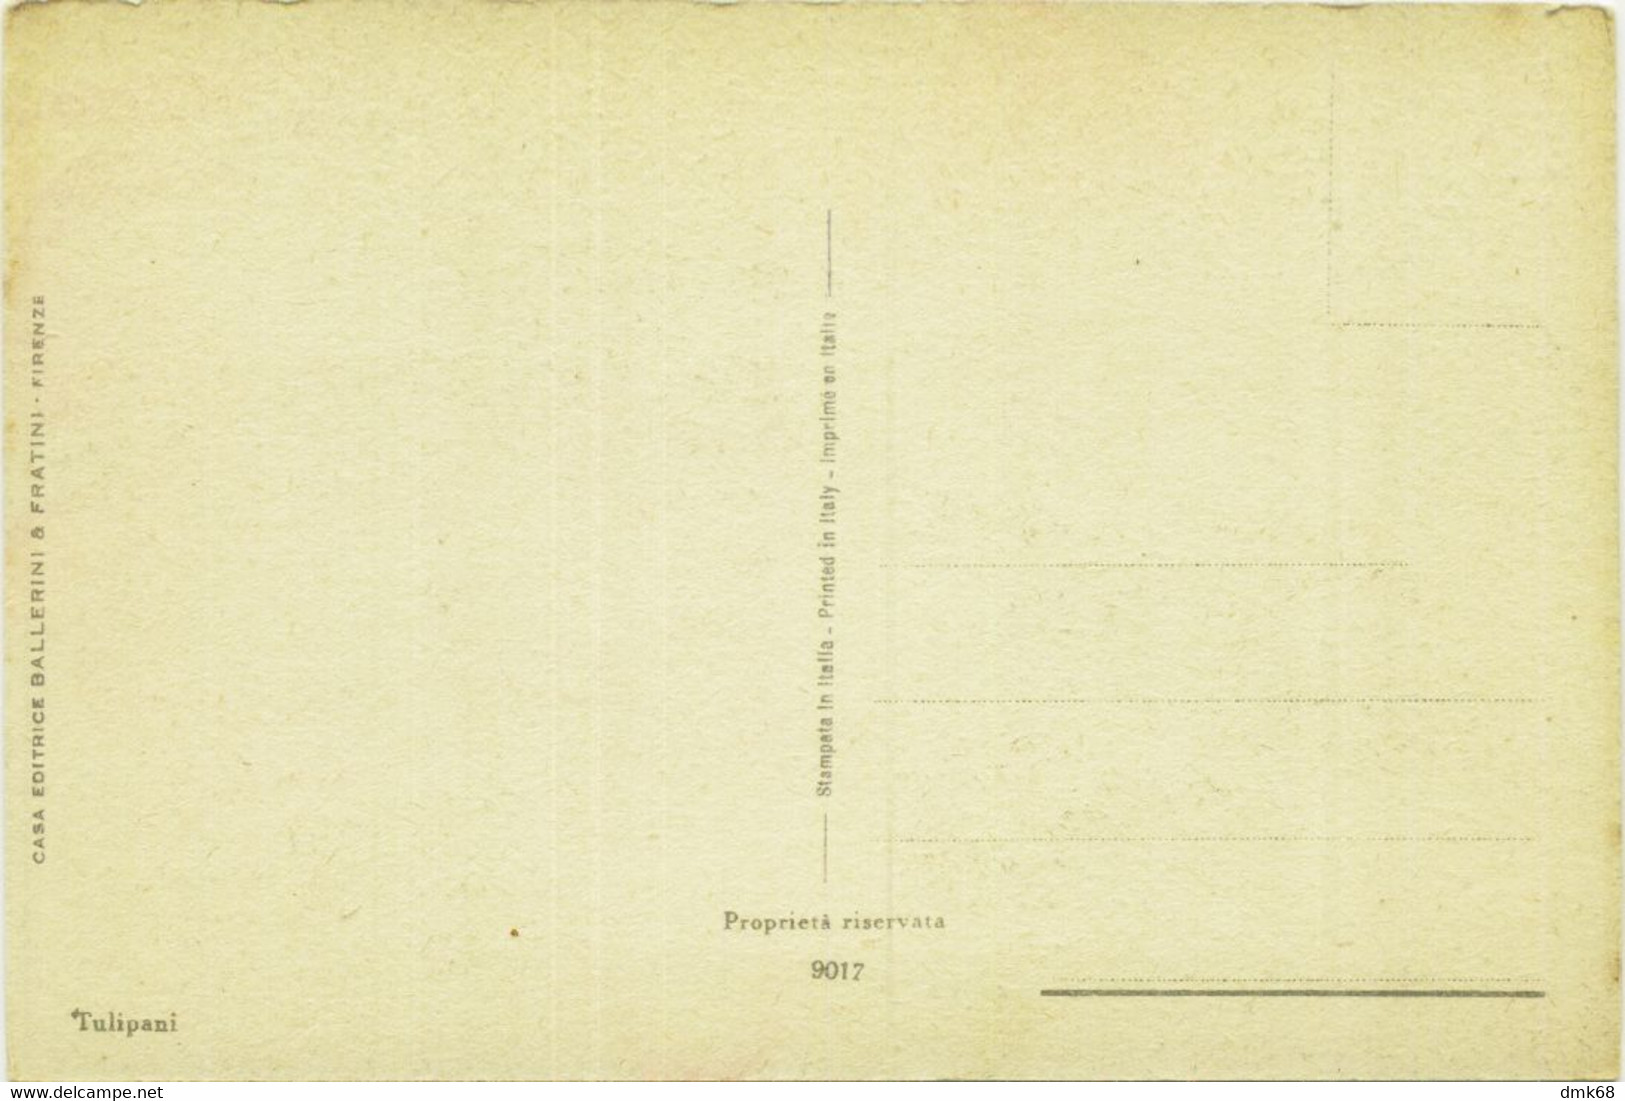 CHIOSTRI SIGNED 1920s/30s POSTCARD - TULIPANI -  EDIT BALLERINI & FRATINI - N. 9017 (1767) - Chiostri, Carlo